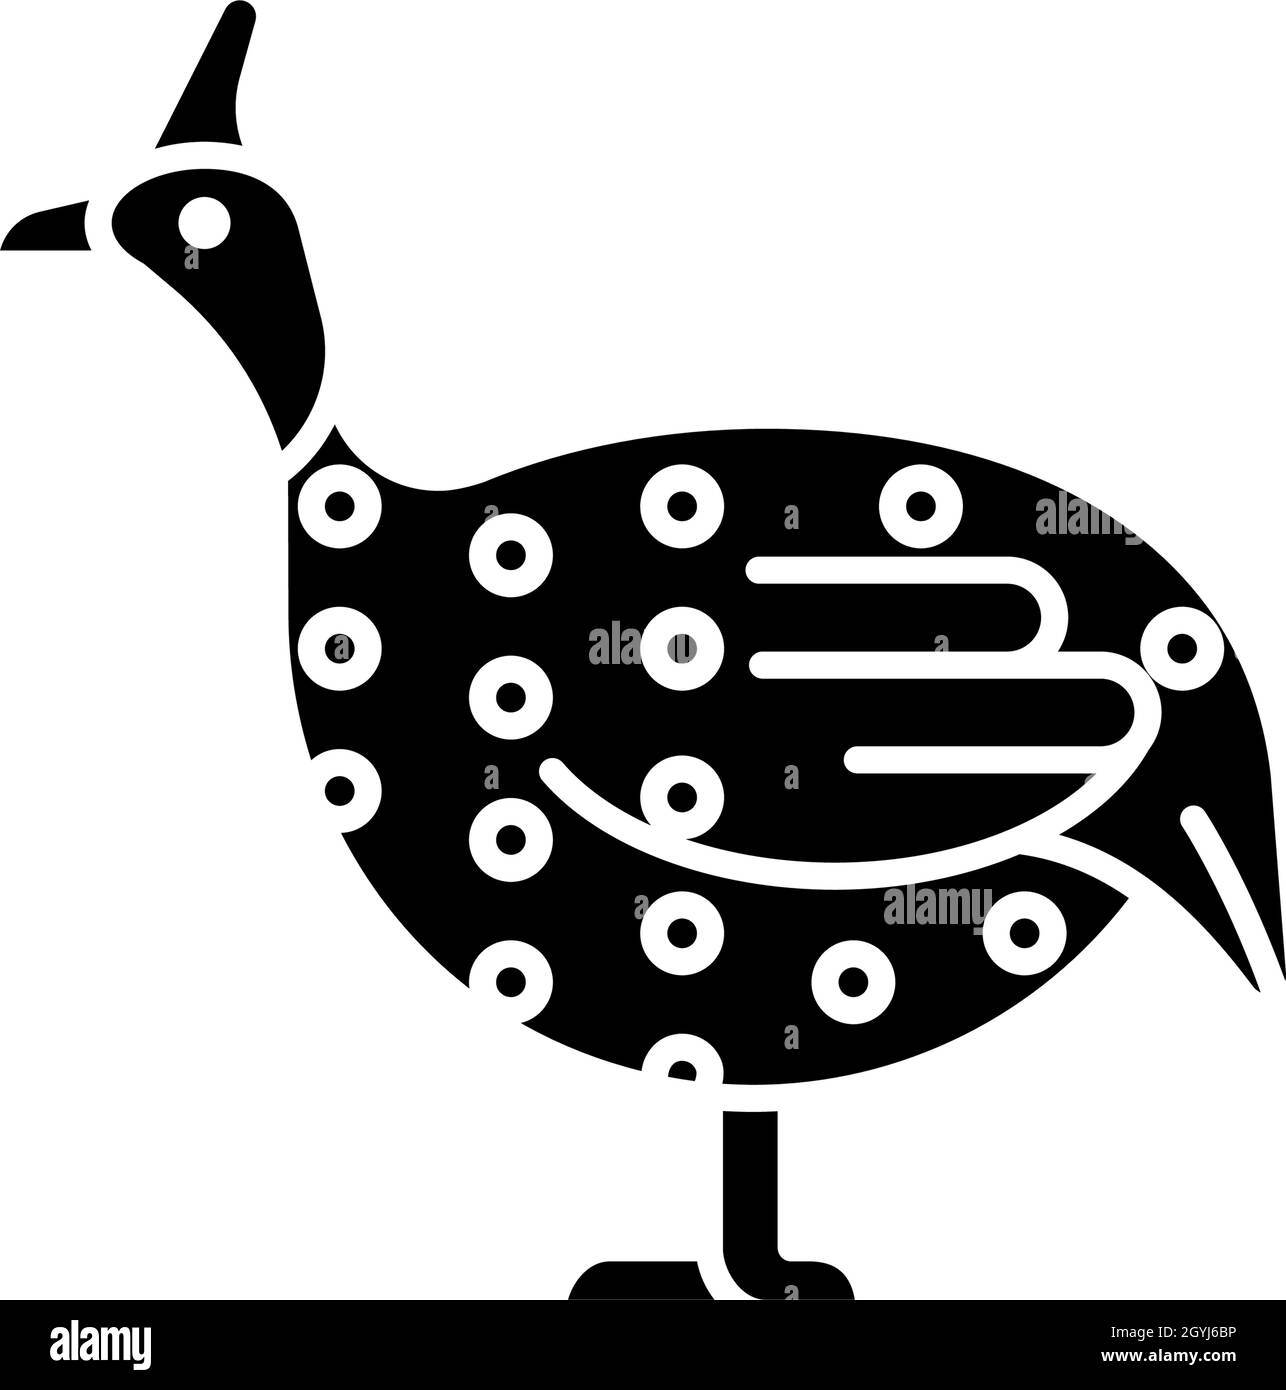 Guinea fowl black glyph icon Stock Vector